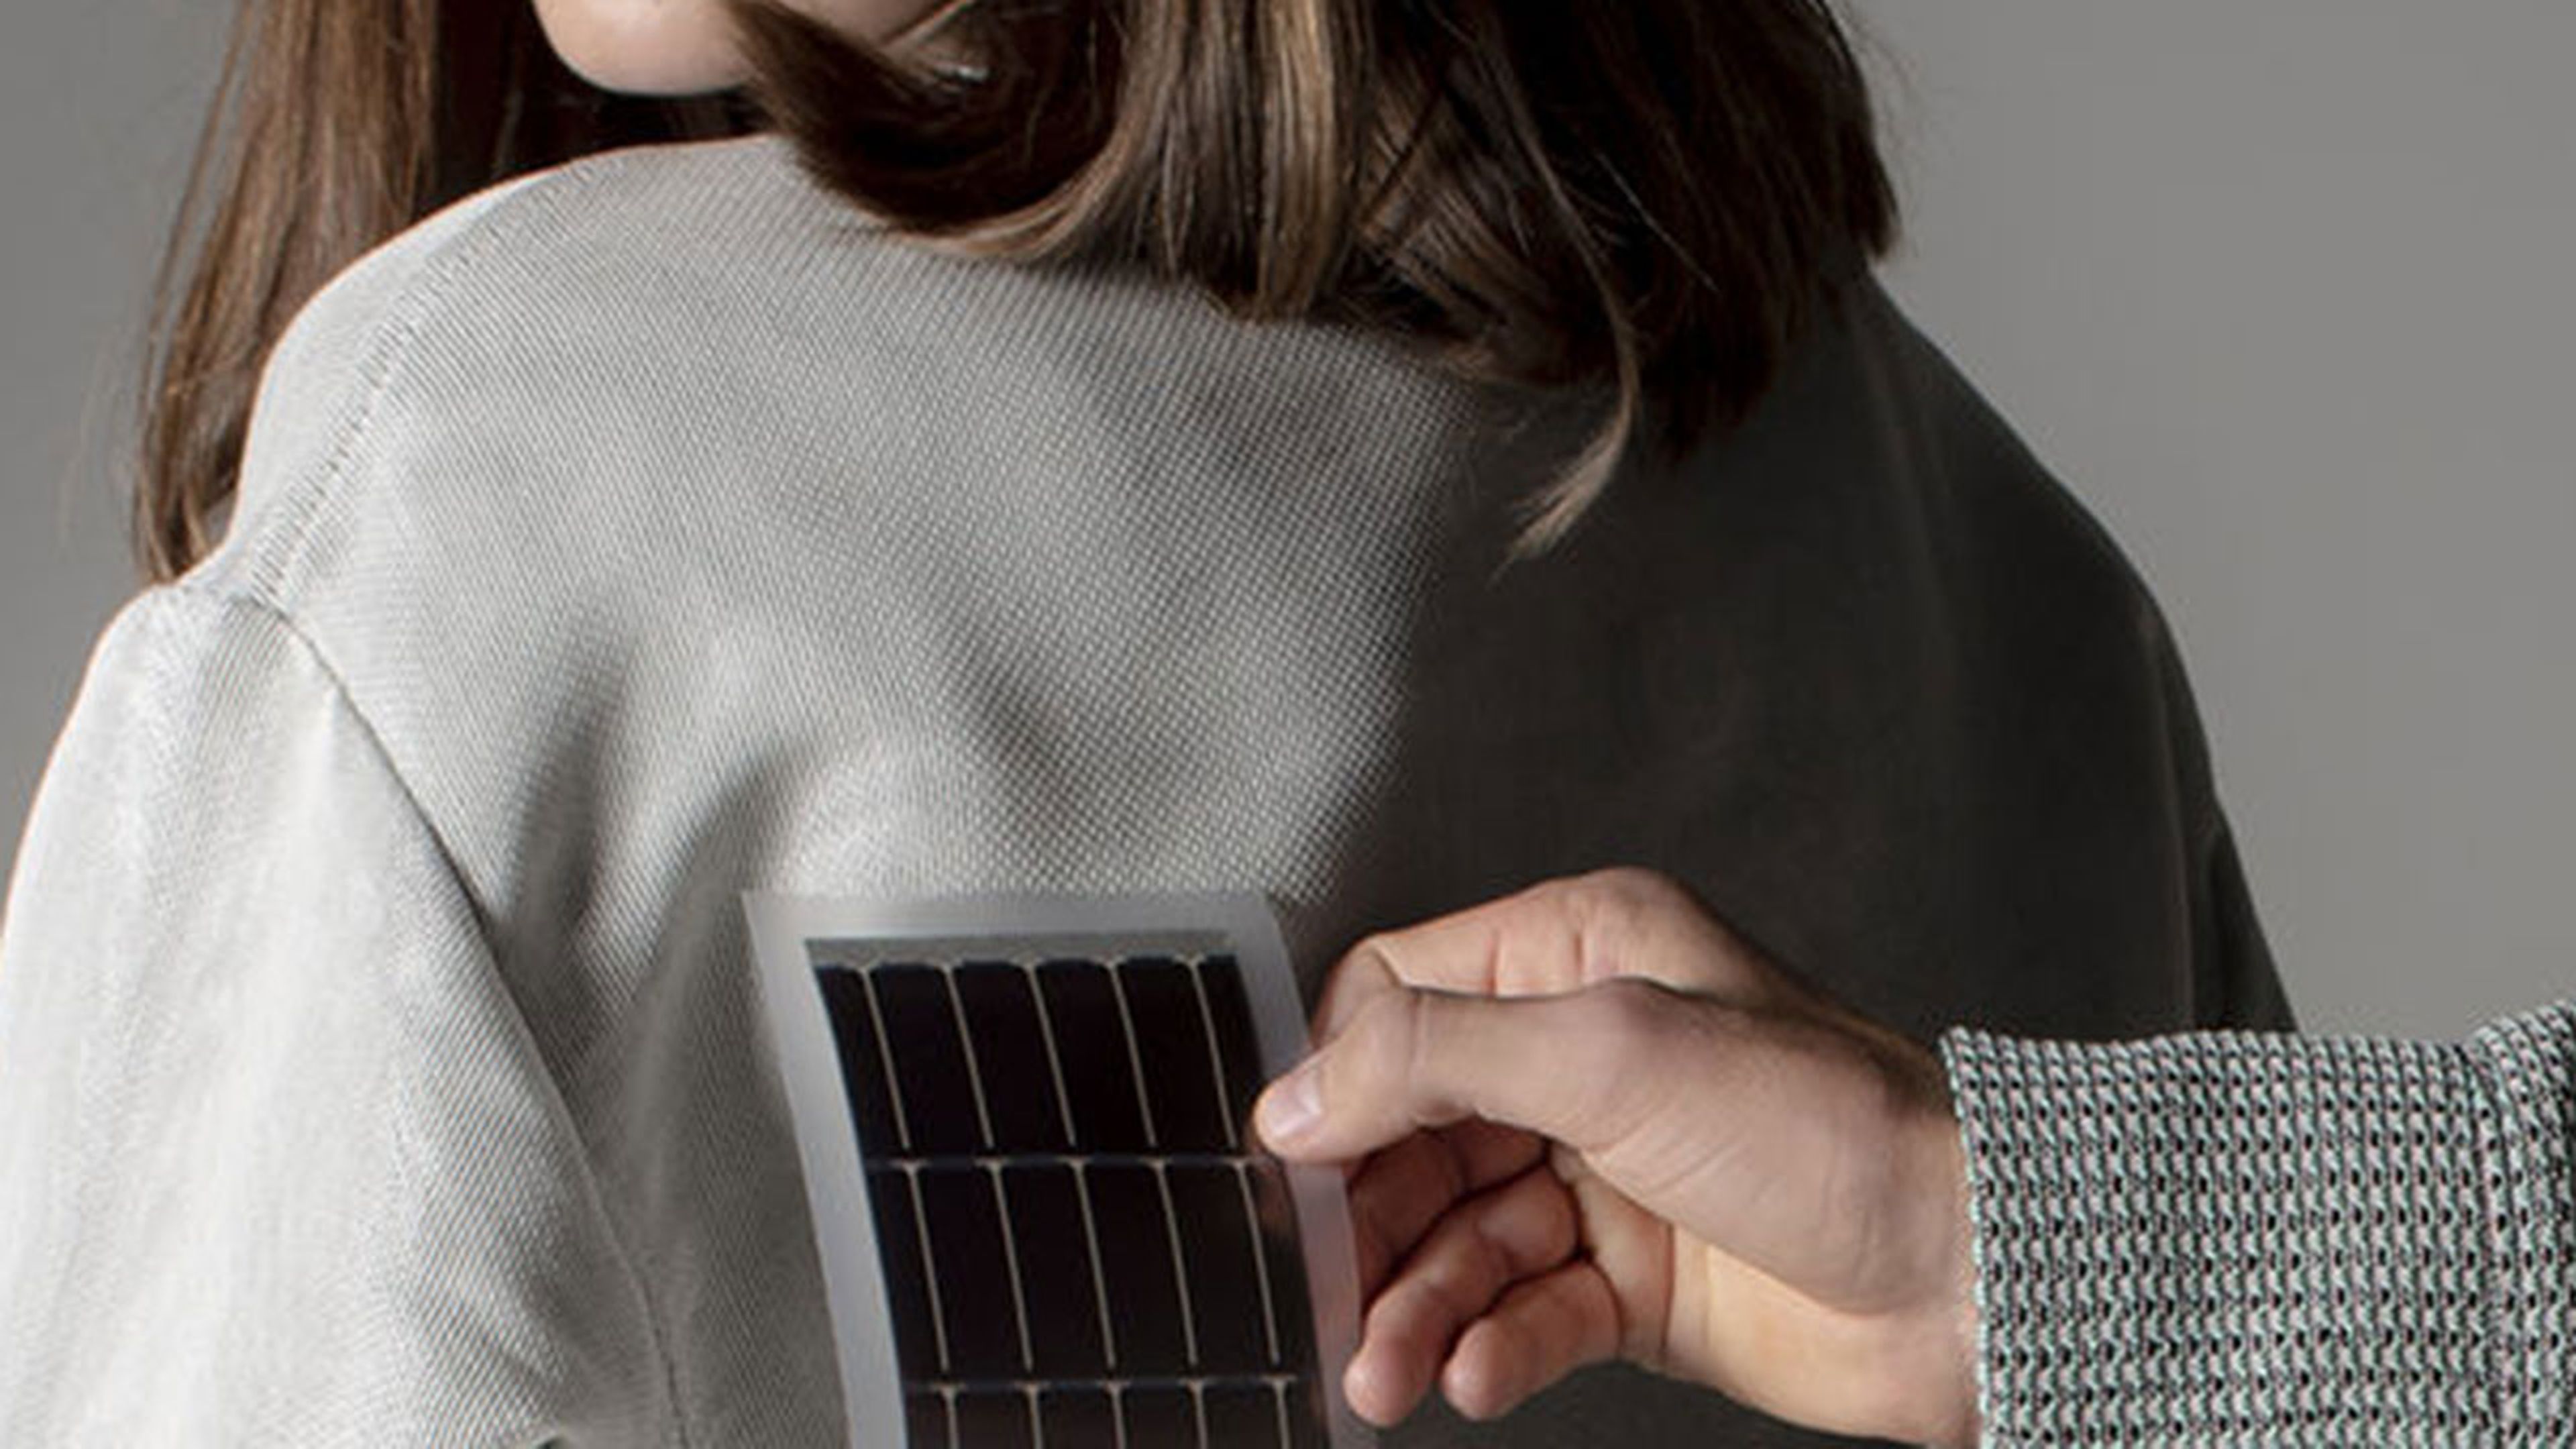 Inventan células solares en textiles que proporcionan una fuente de energía a dispositivos portátiles